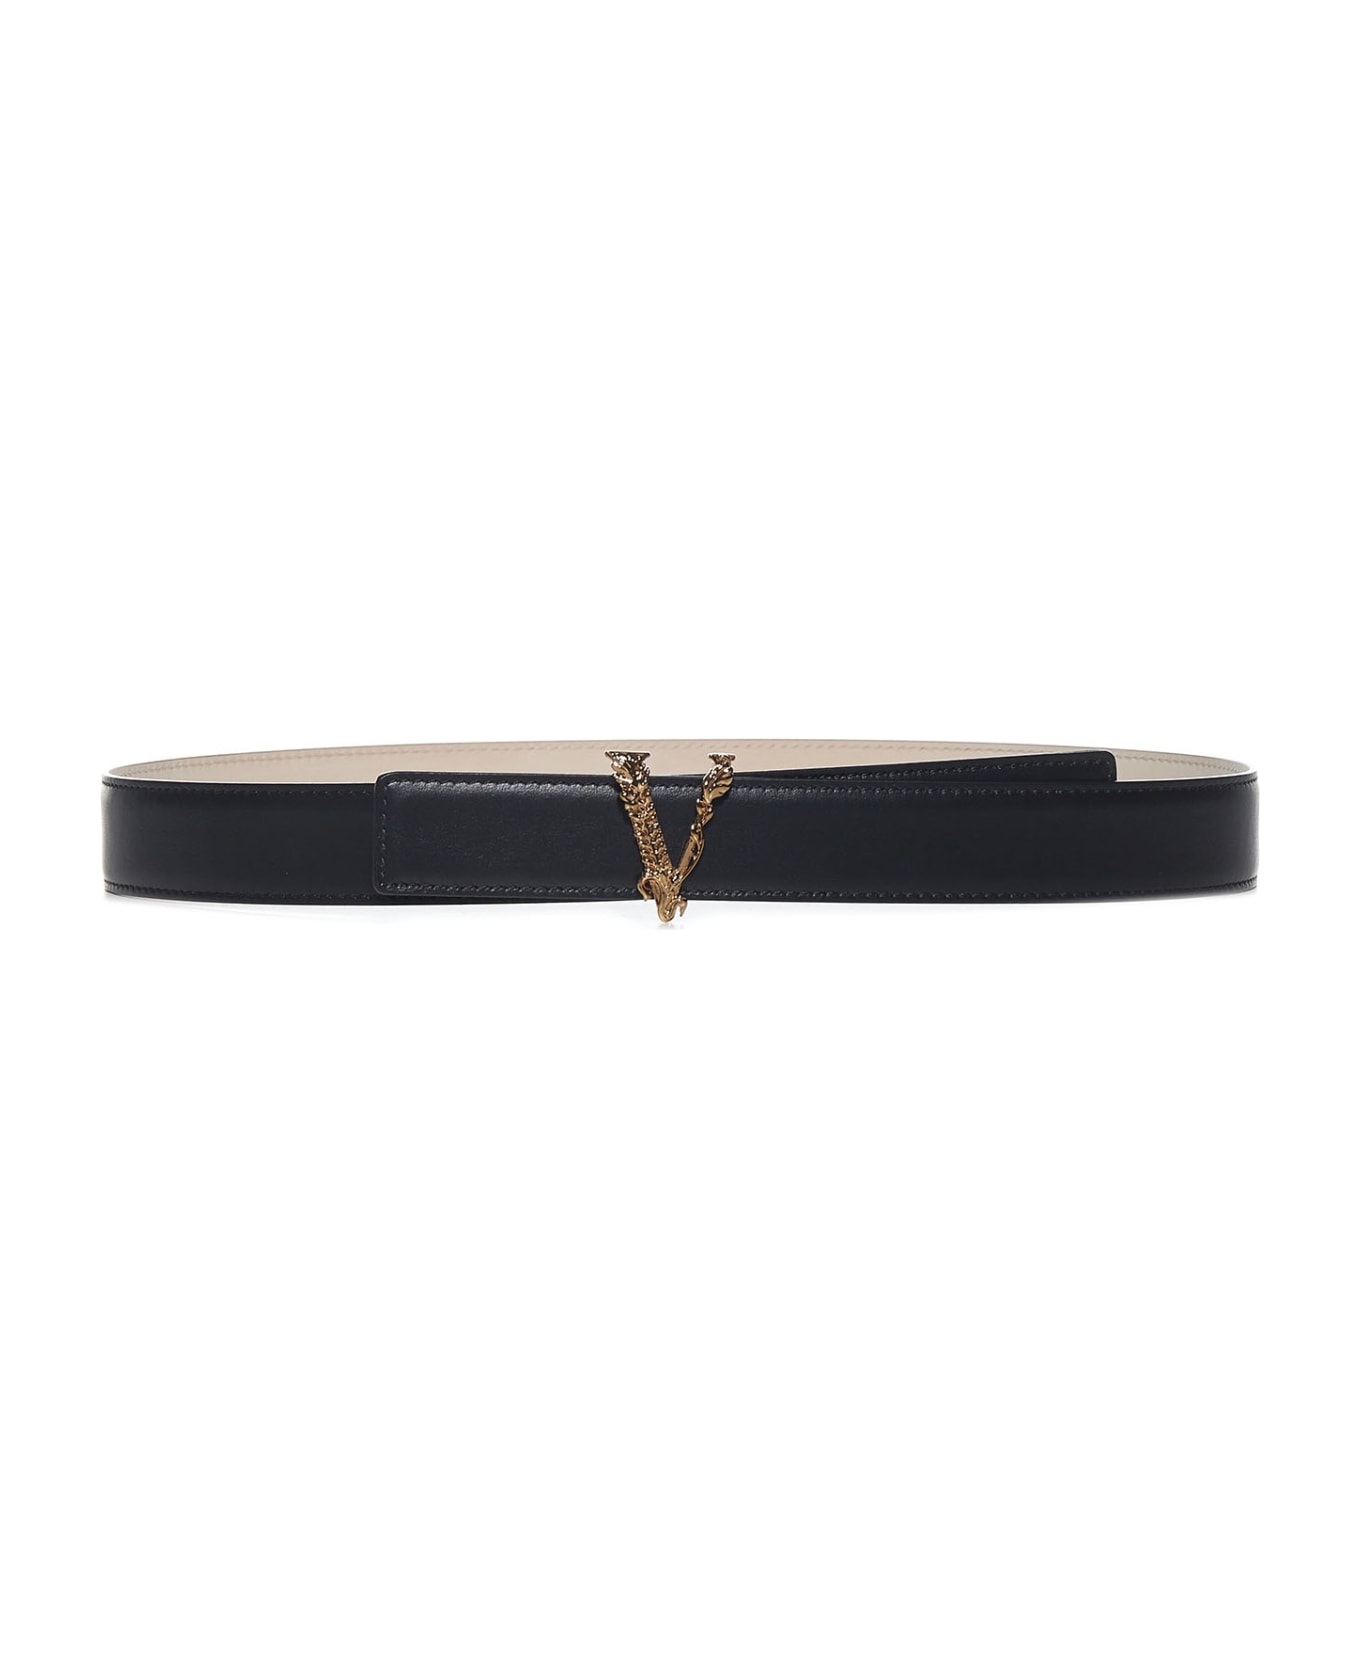 Versace Belt - for further details